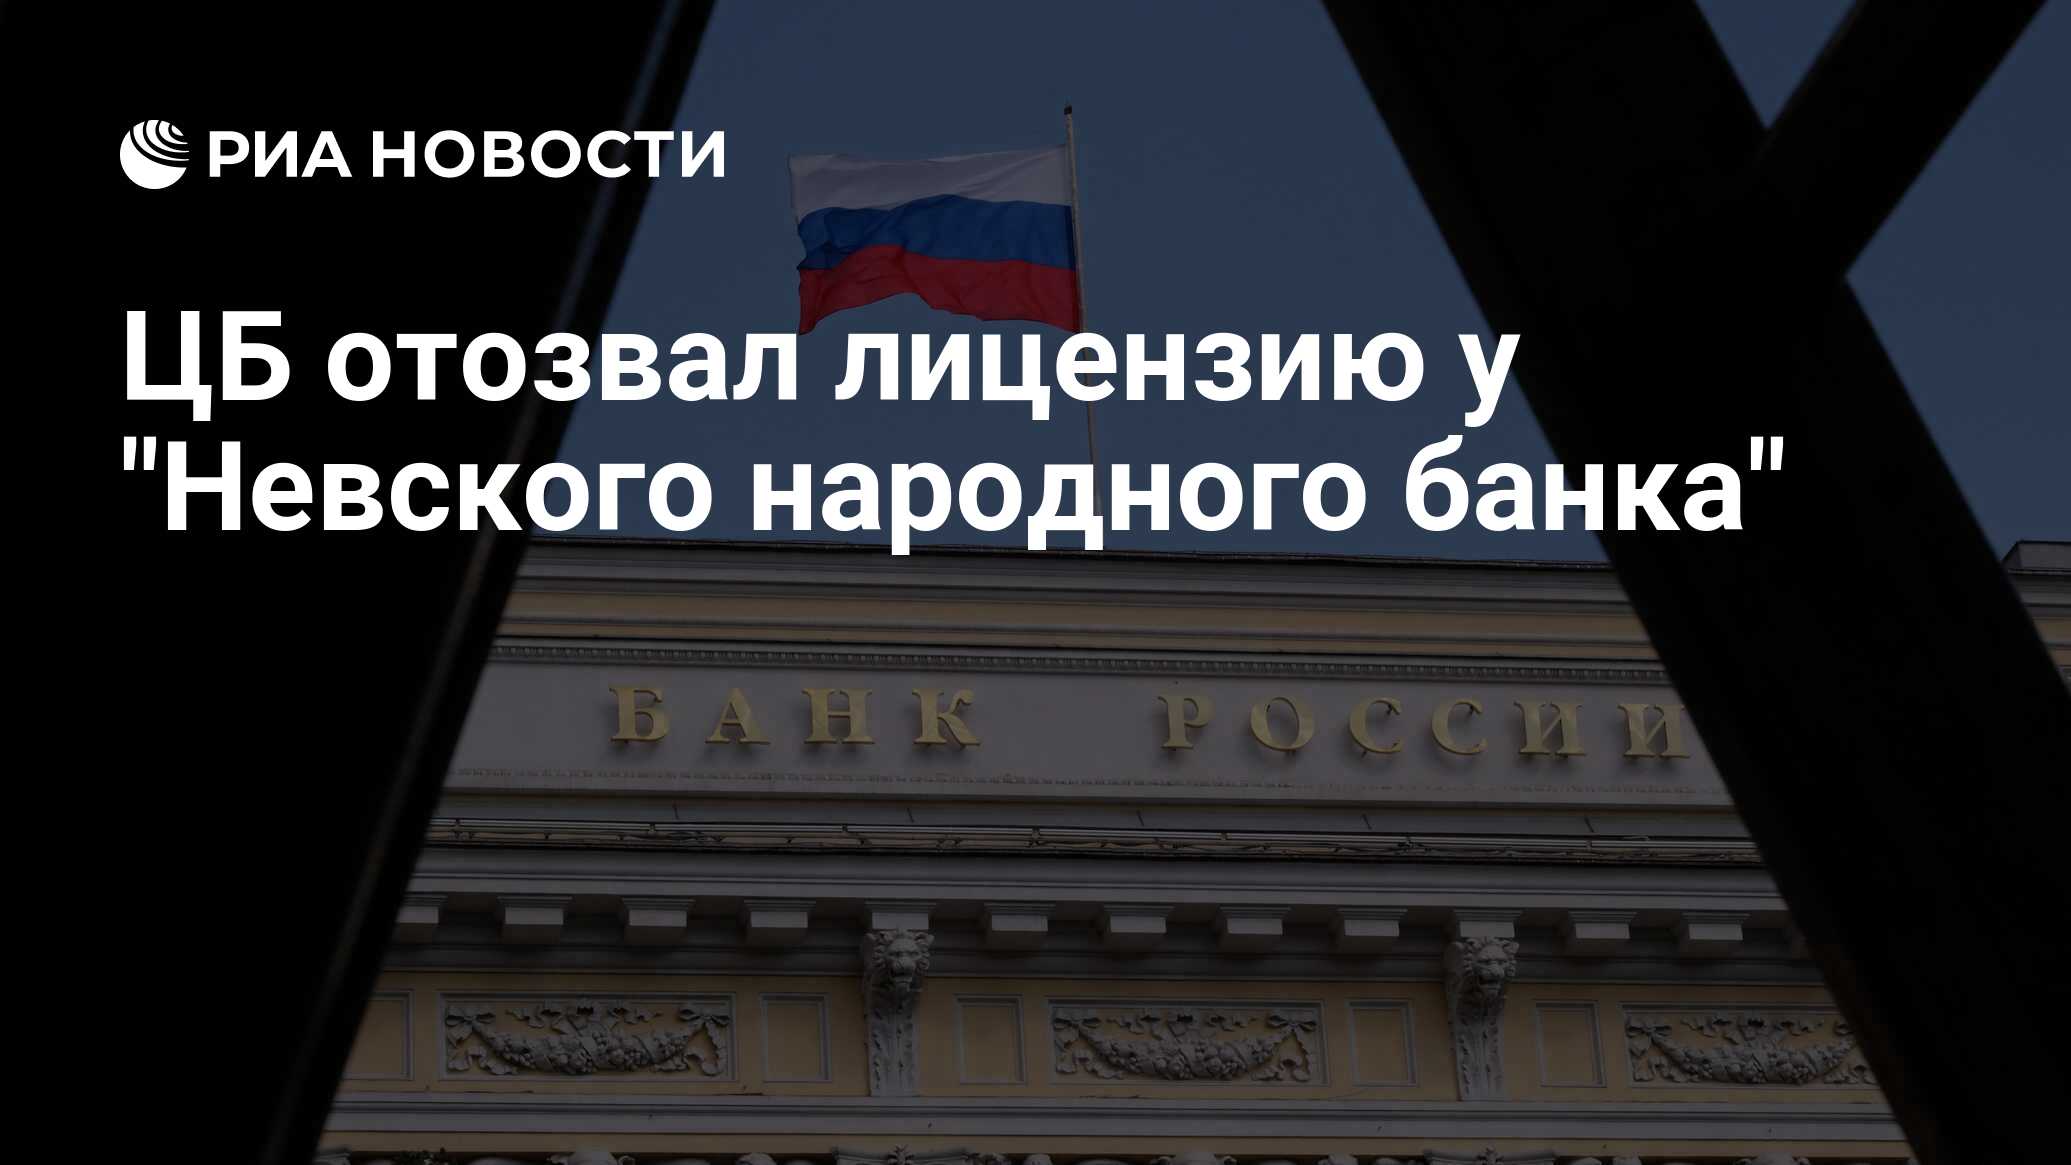 Русский народный банк отозвали лицензию. Риа банк новости